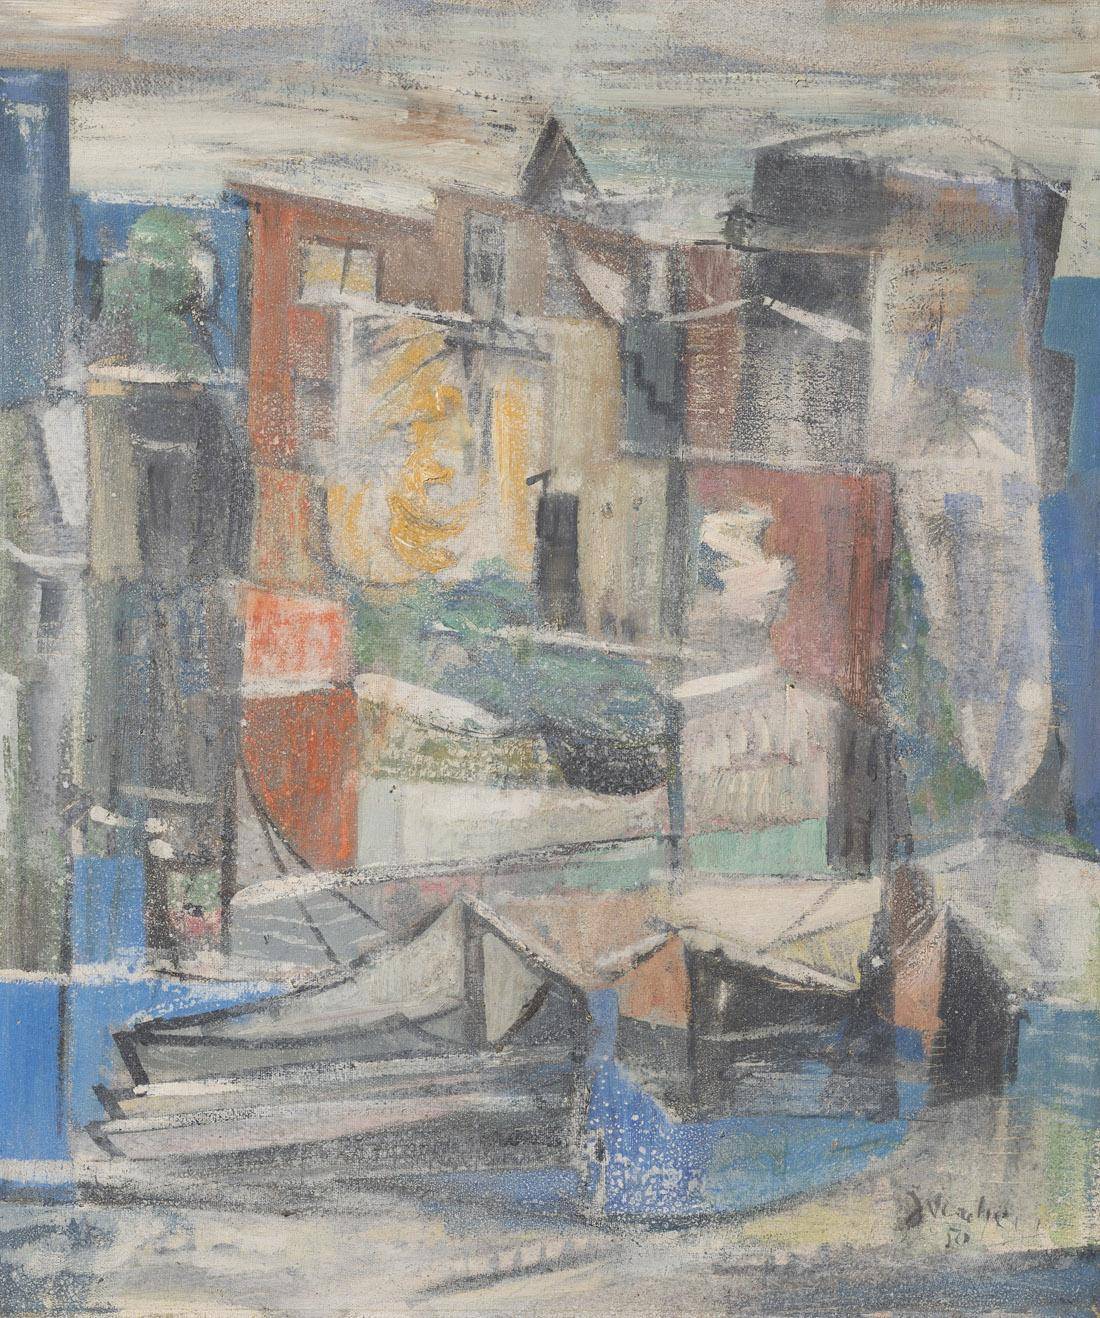 Botes. Julio Verdié (1900-1988). Óleo sobre tela.  55 x 47 cm. Nº inv. 4960.